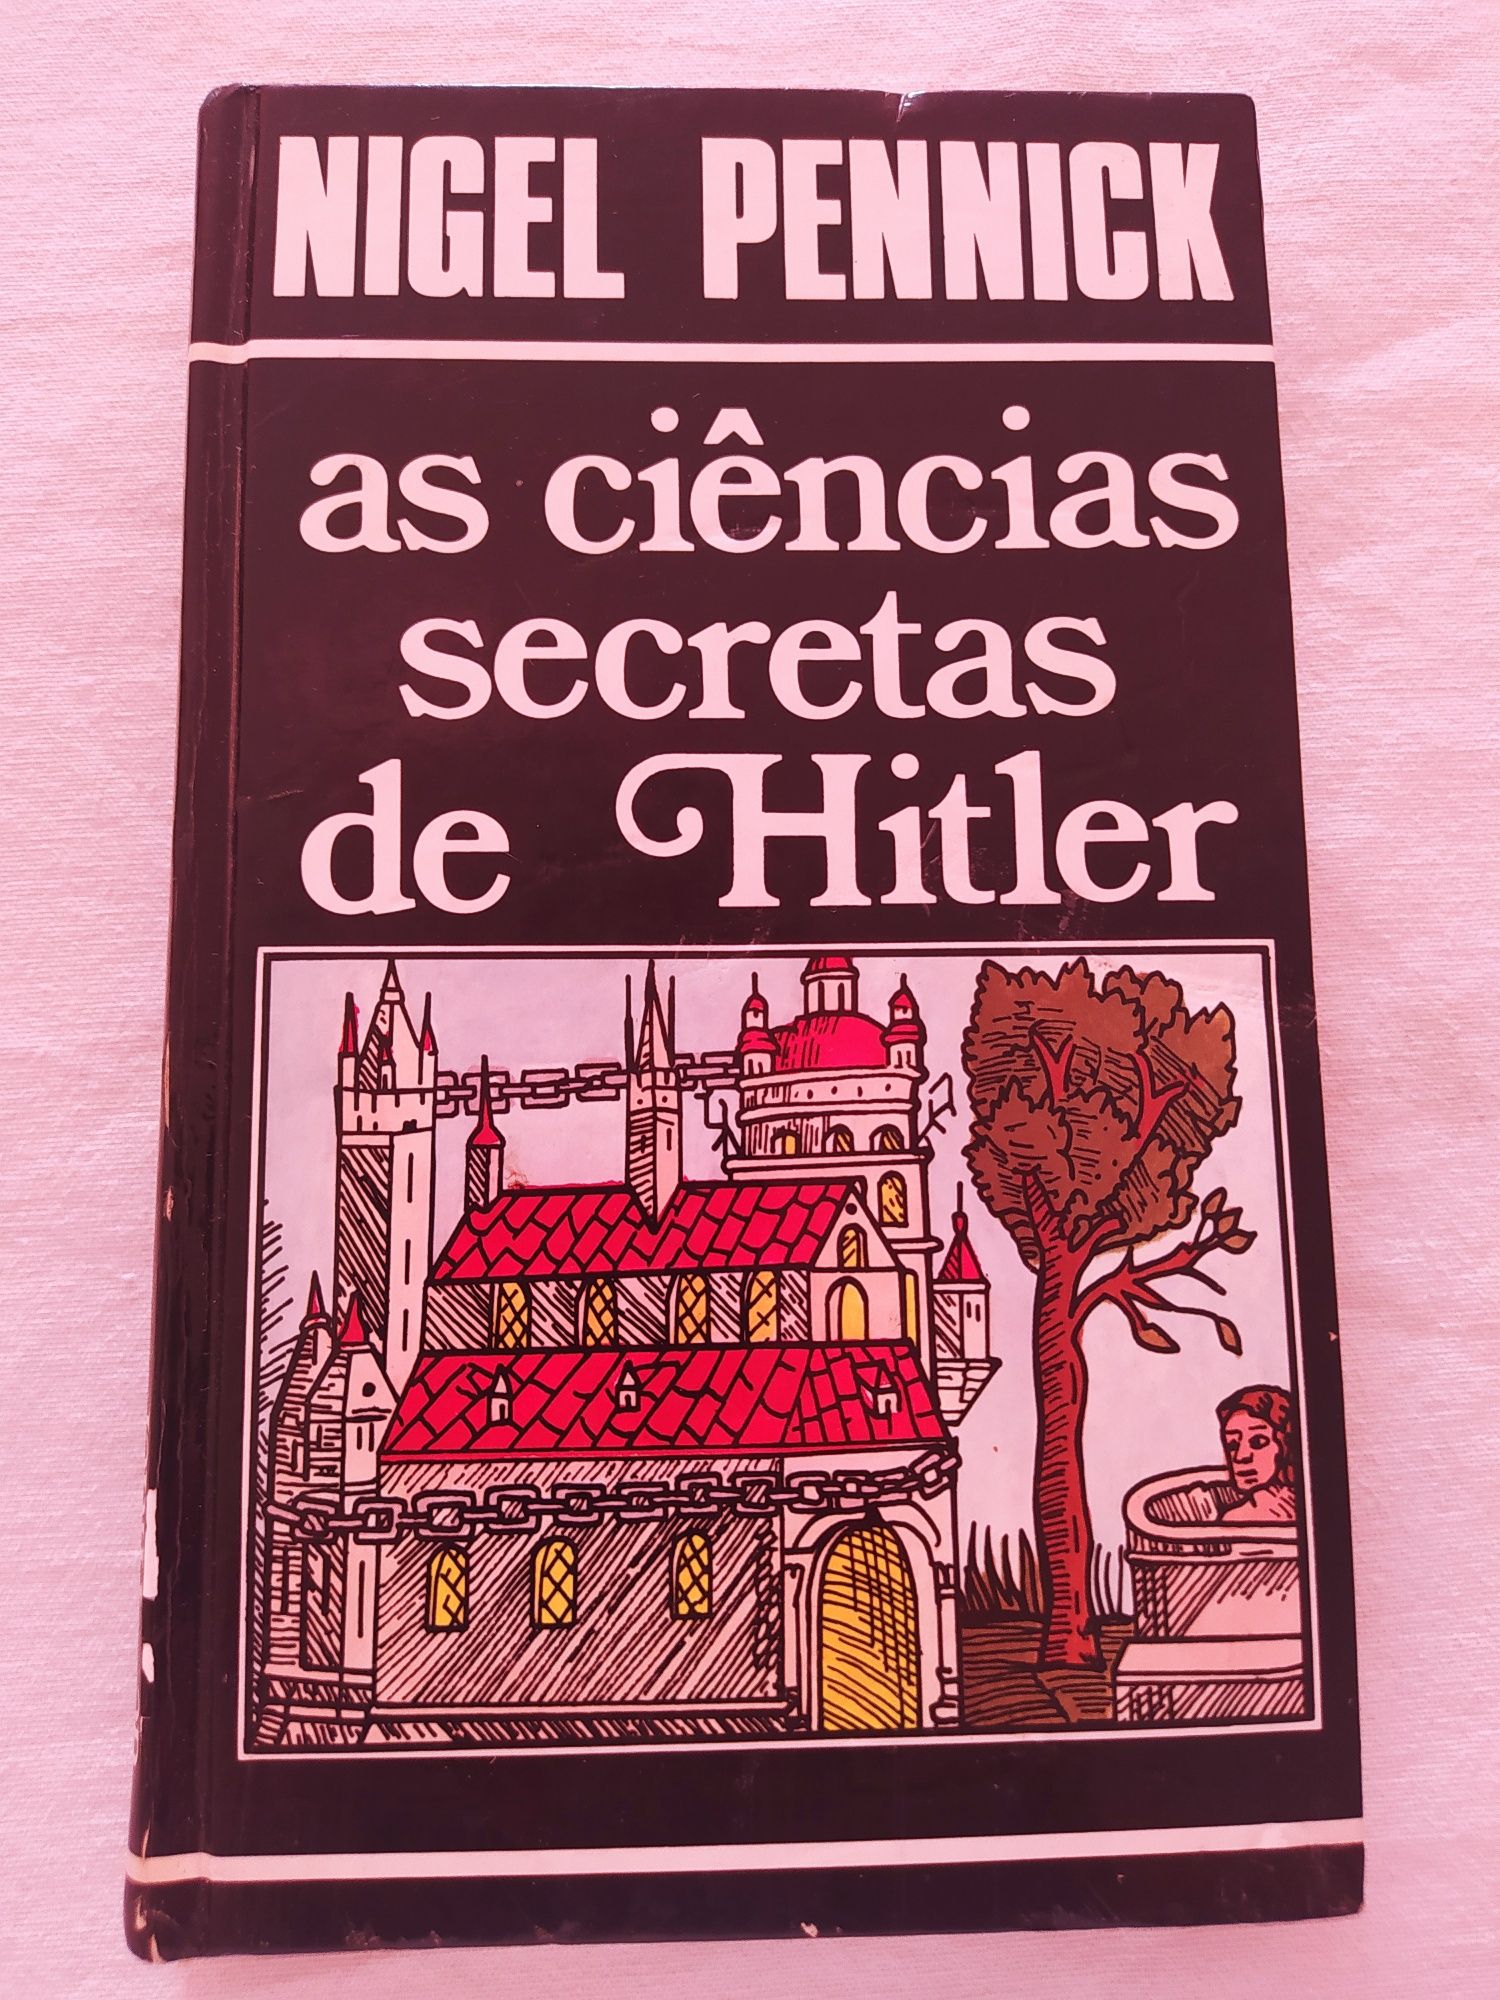 As Ciências Secretas de Hitler. Nigel Penneick